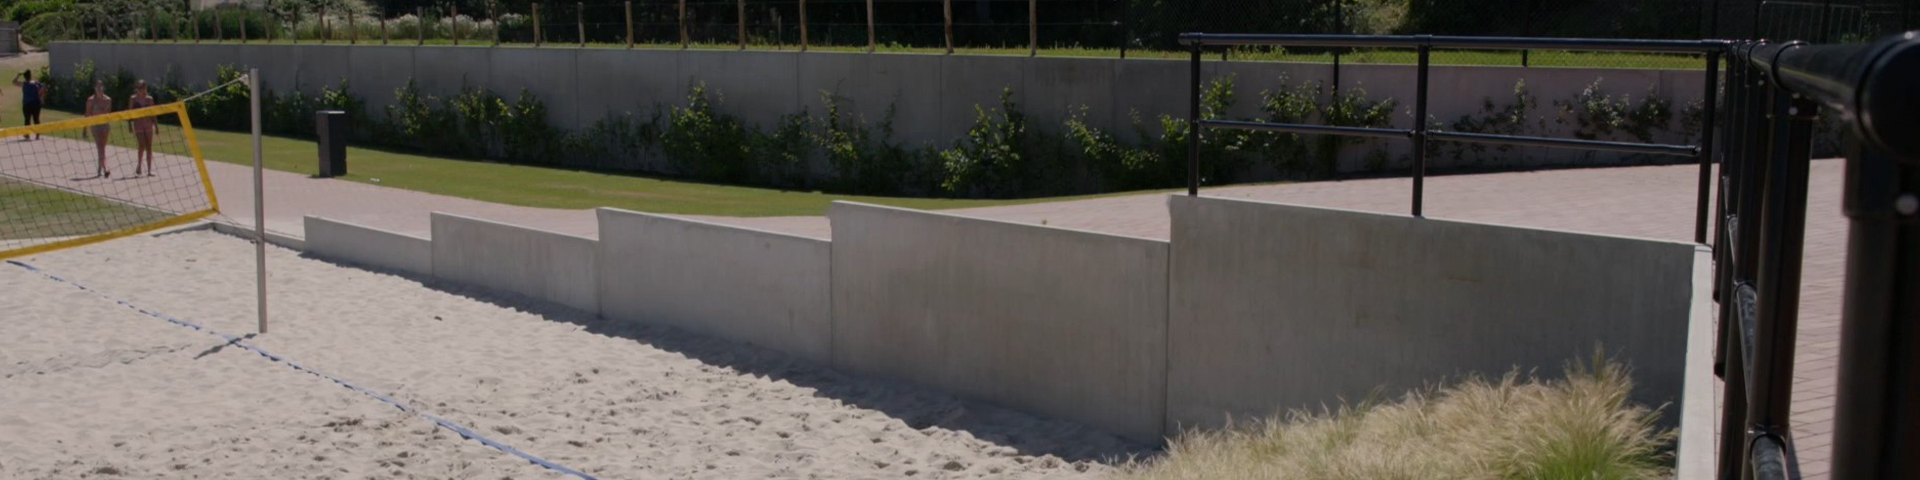 Bosch Beton - Keerwanden als afscheiding en geluidsscherm op recreatiepark BillyBird in Volkel